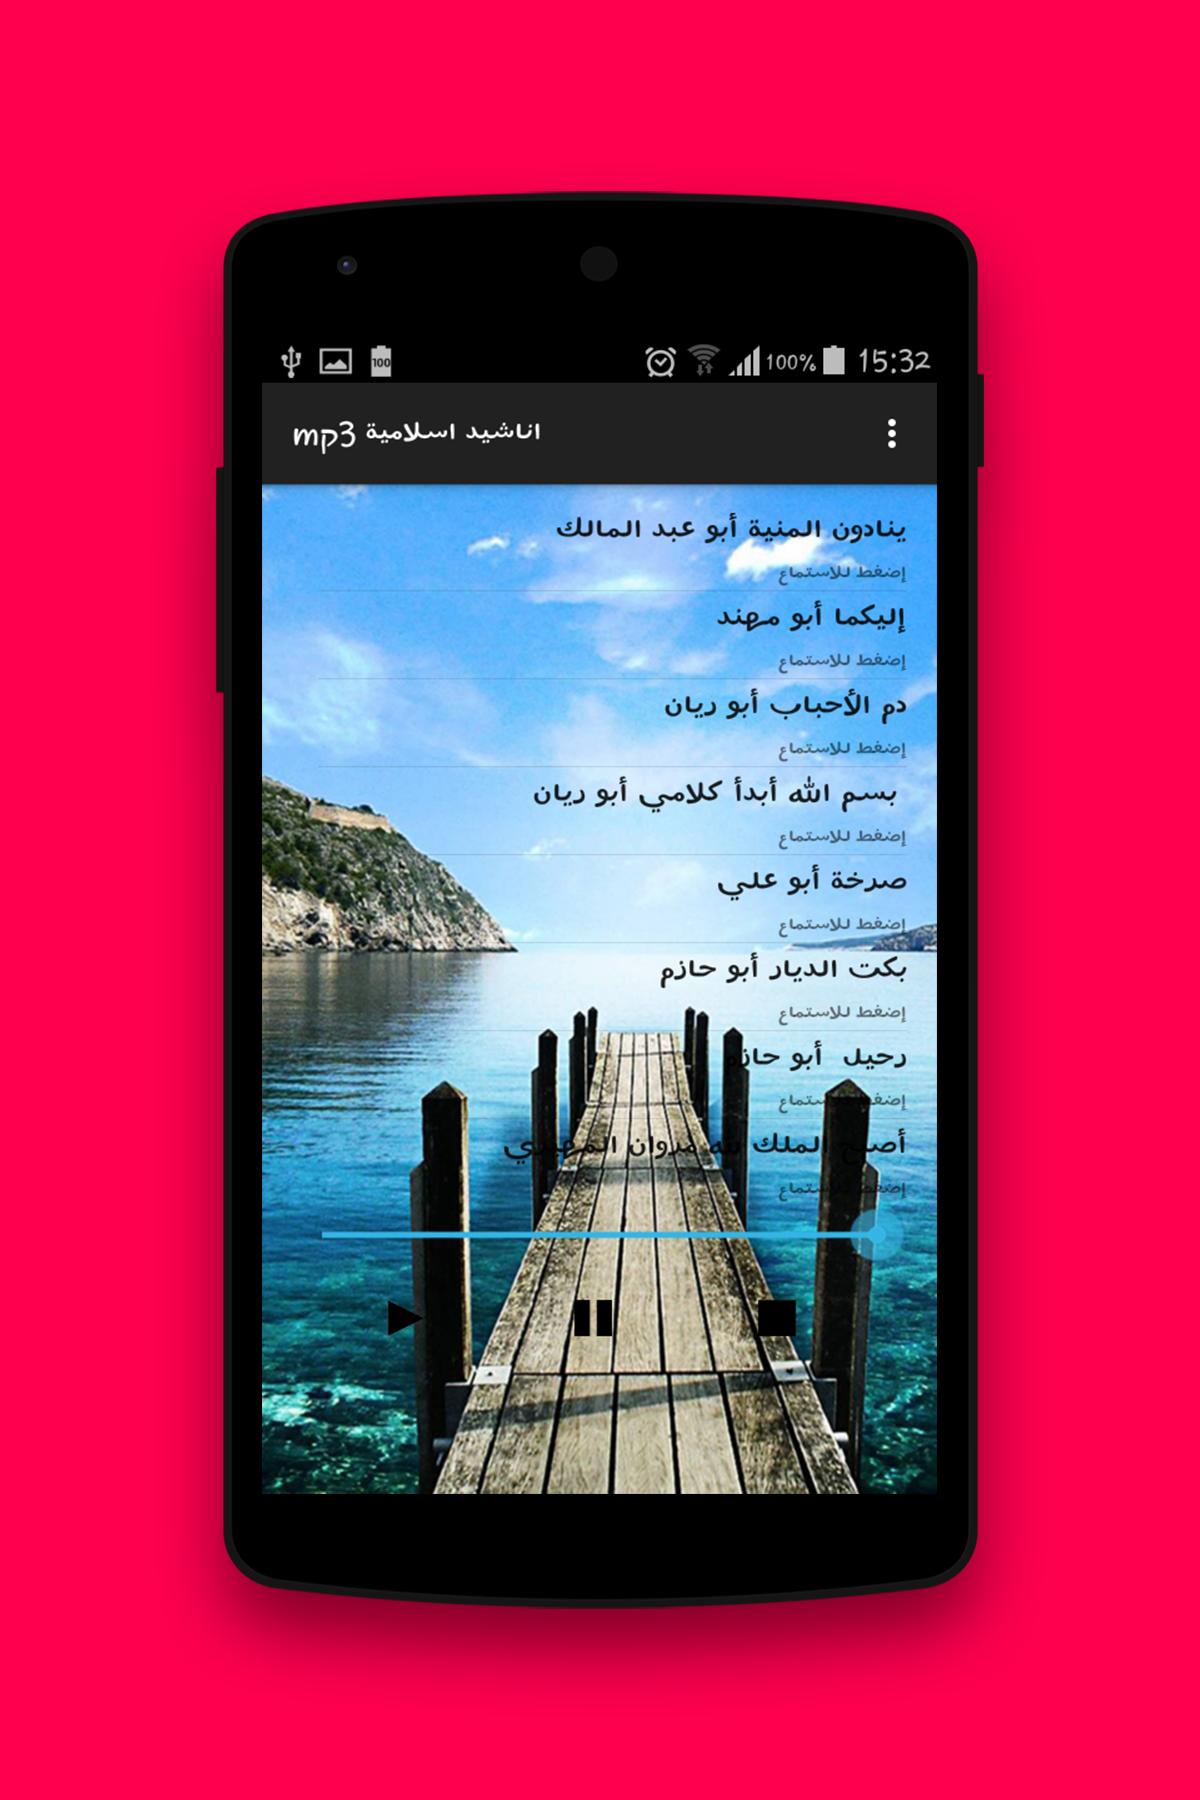 اناشيد اسلامية mp3 APK for Android Download